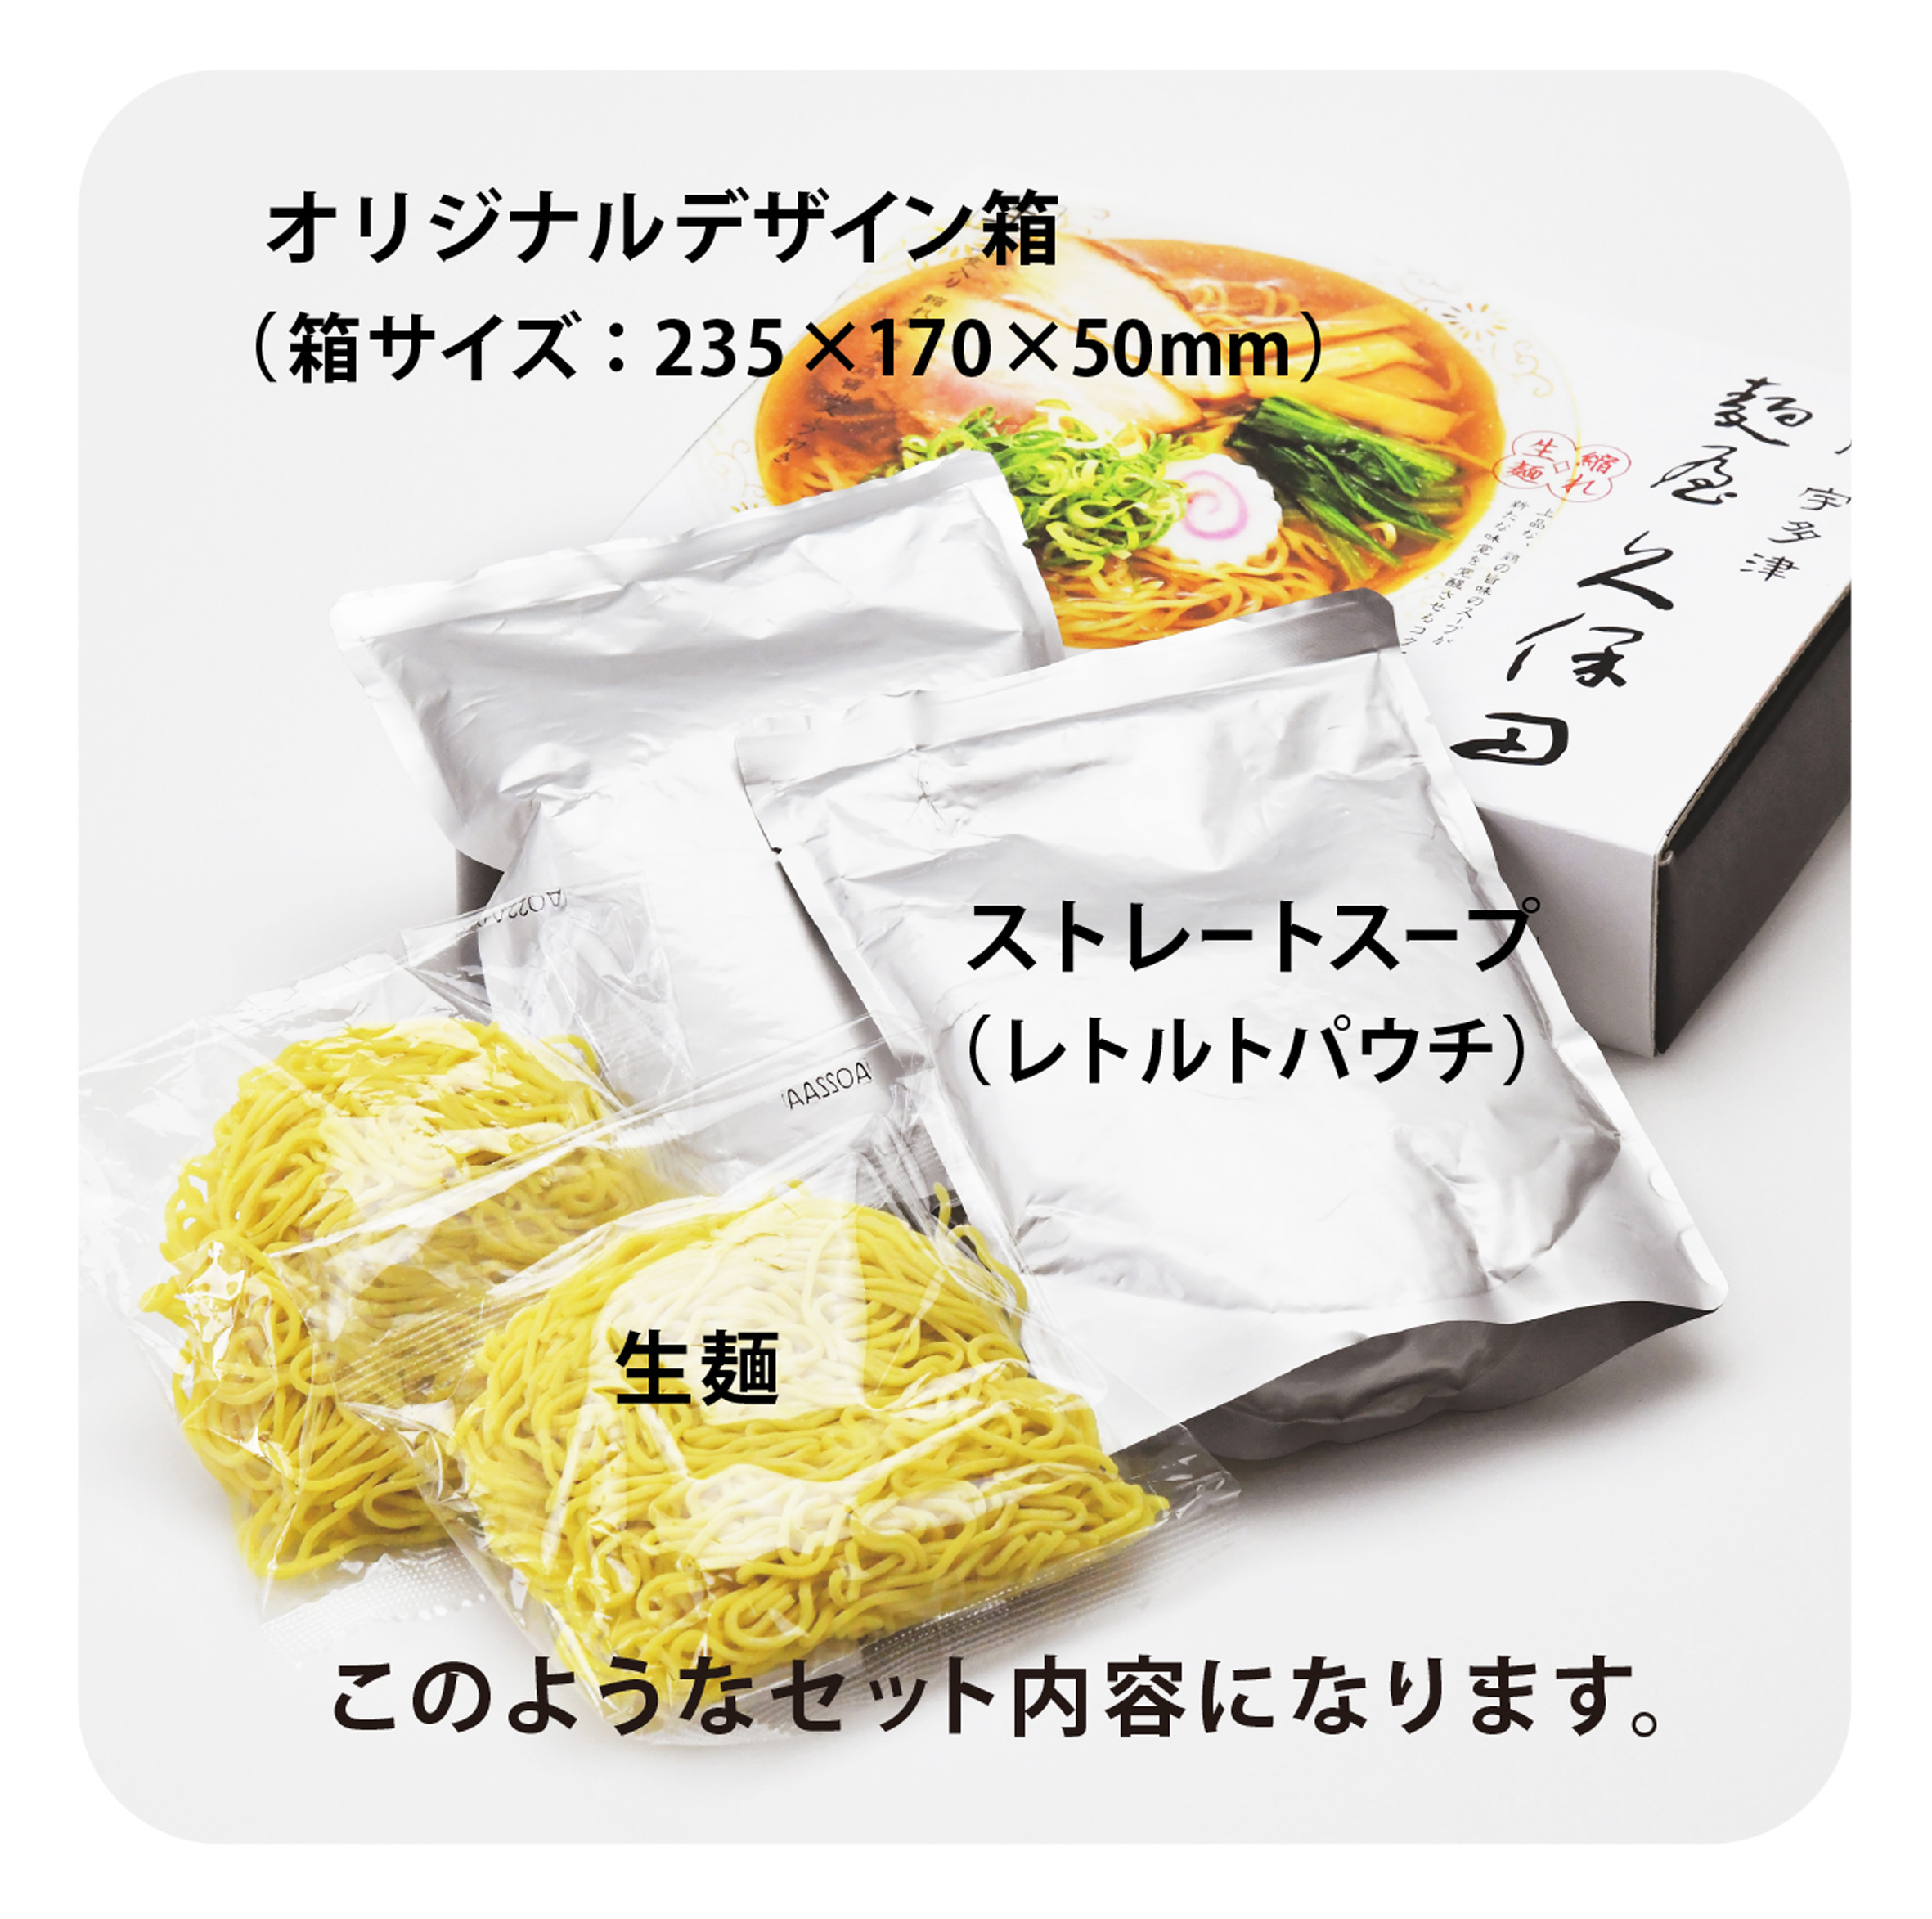 日本茶と浮世絵、ふたつの伝統文化を現代につなげる
「冨嶽三十六景ティーバッグシリーズ」を
日本茶屋ハトハから6月22日に新発売